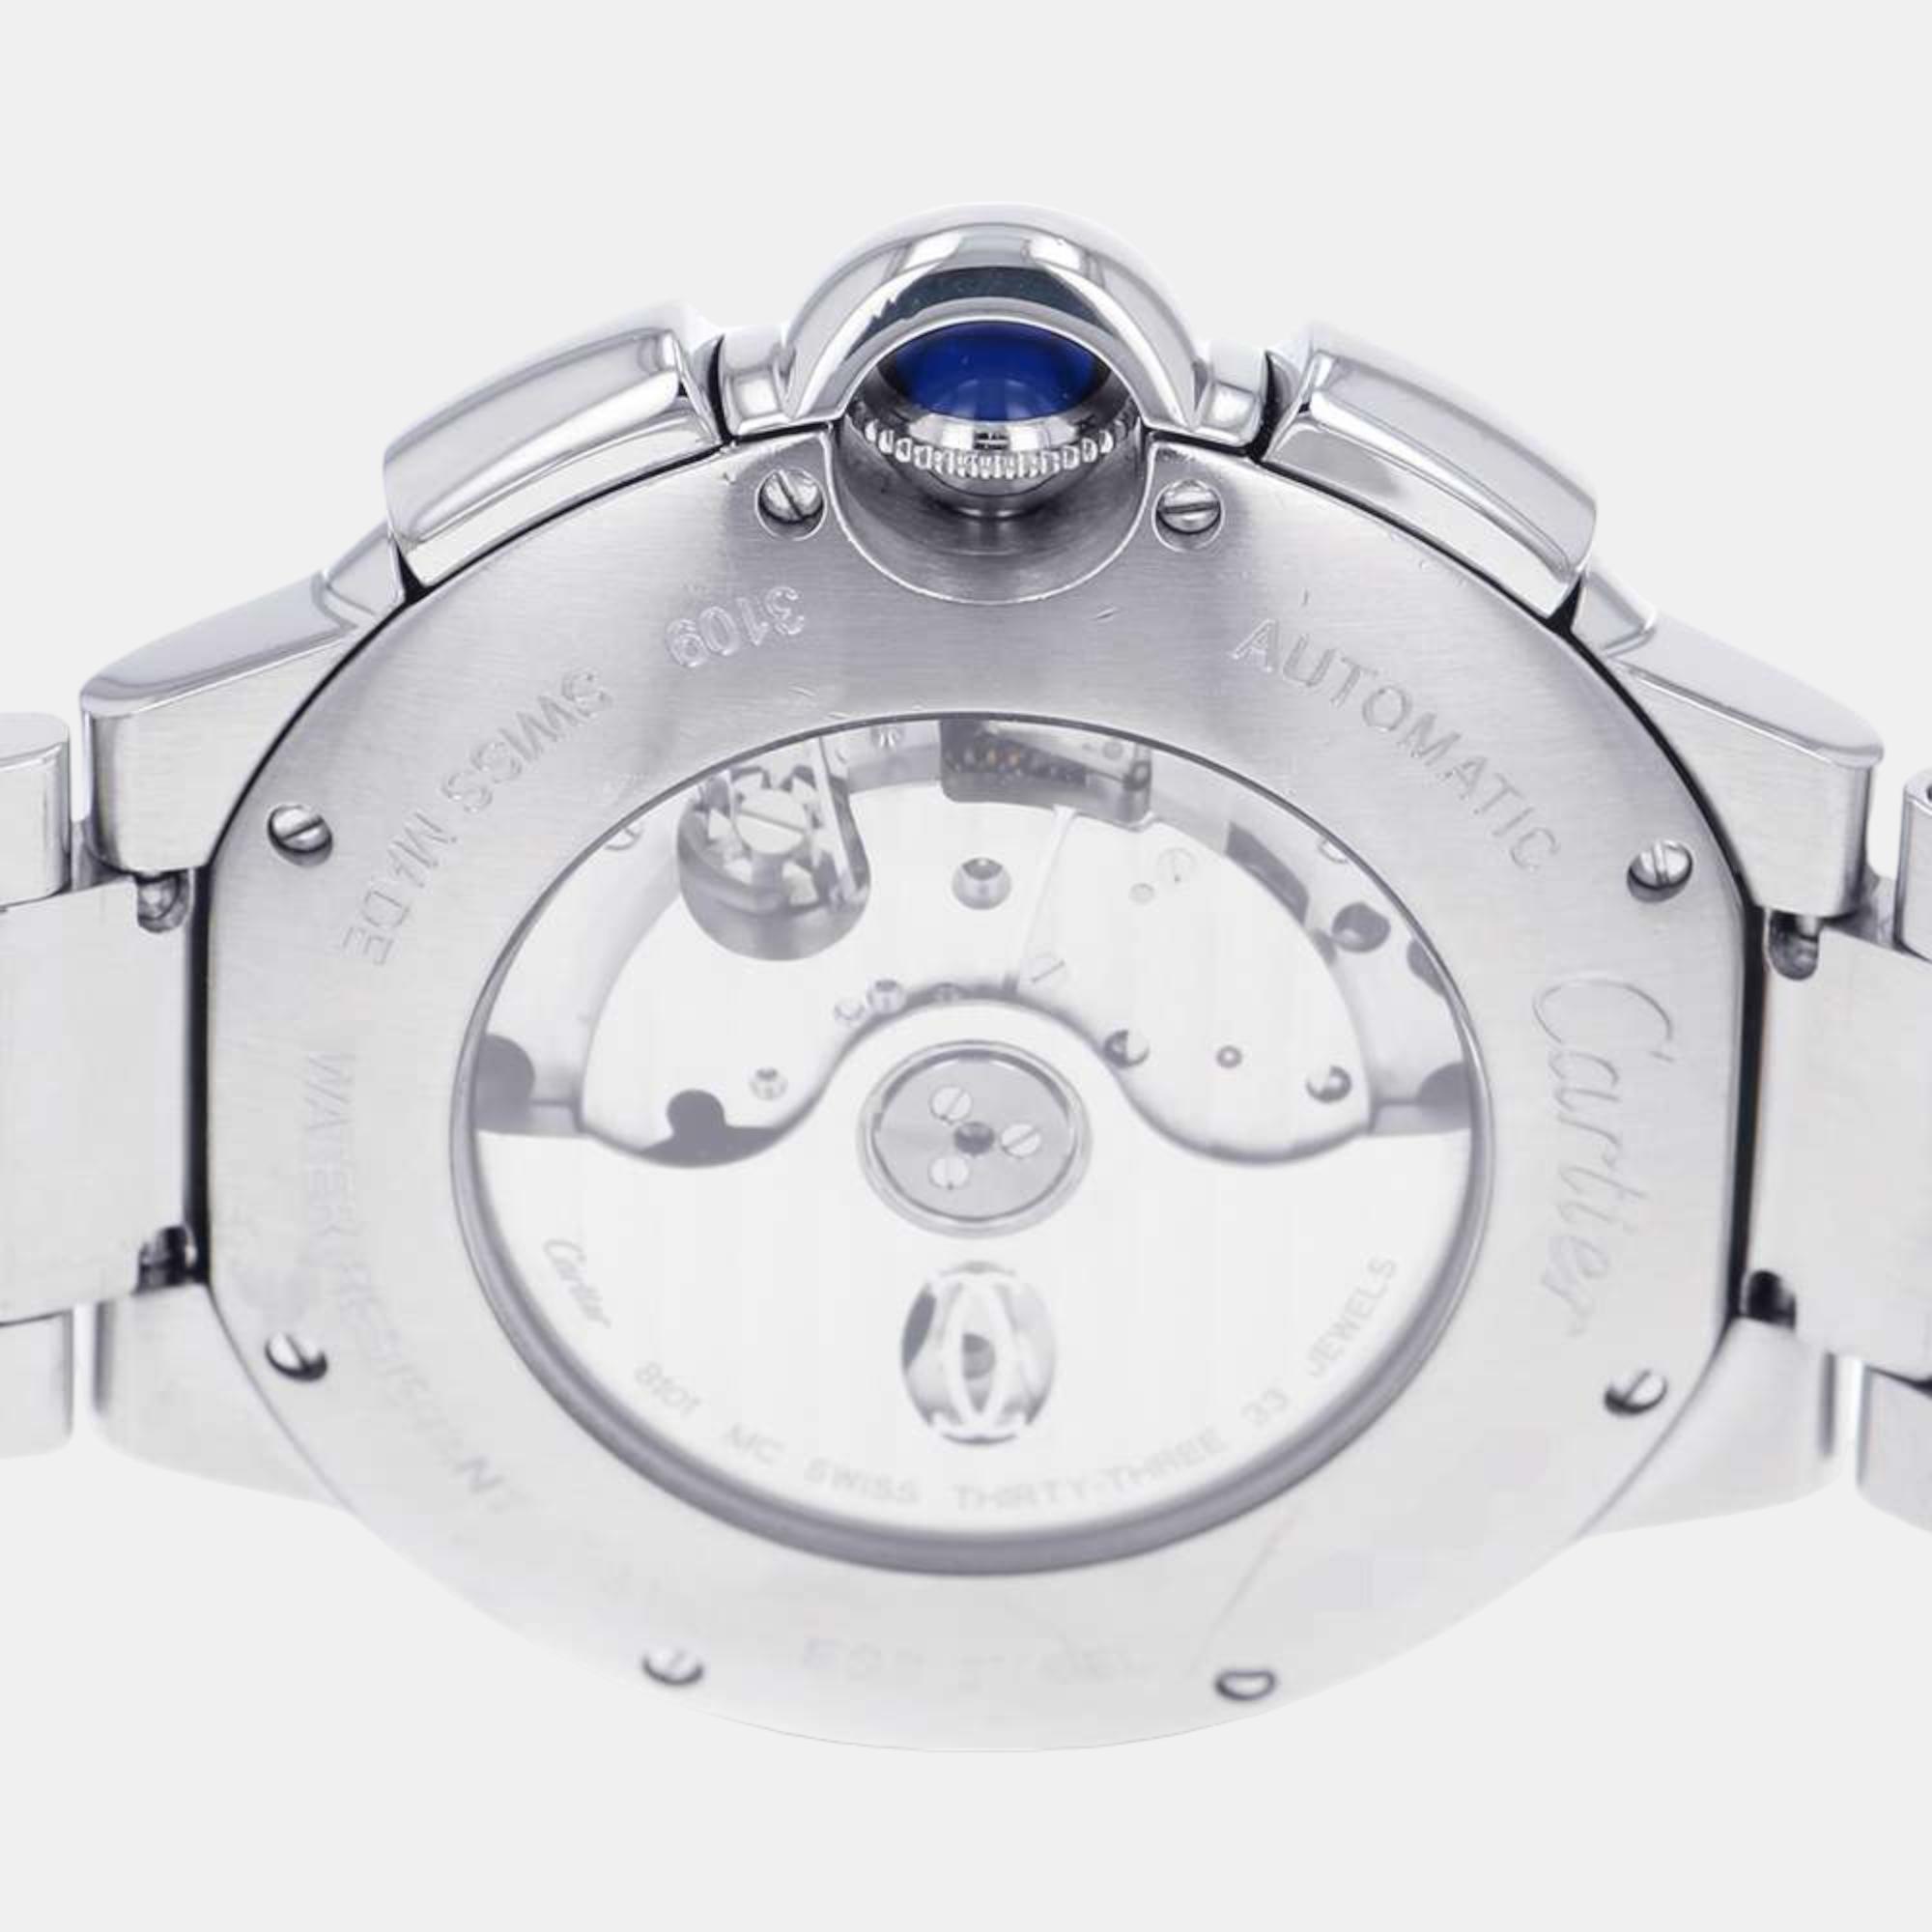 Cartier Grey Stainless Steel Ballon Bleu W6920025 Automatic Men's Wristwatch 44 Mm